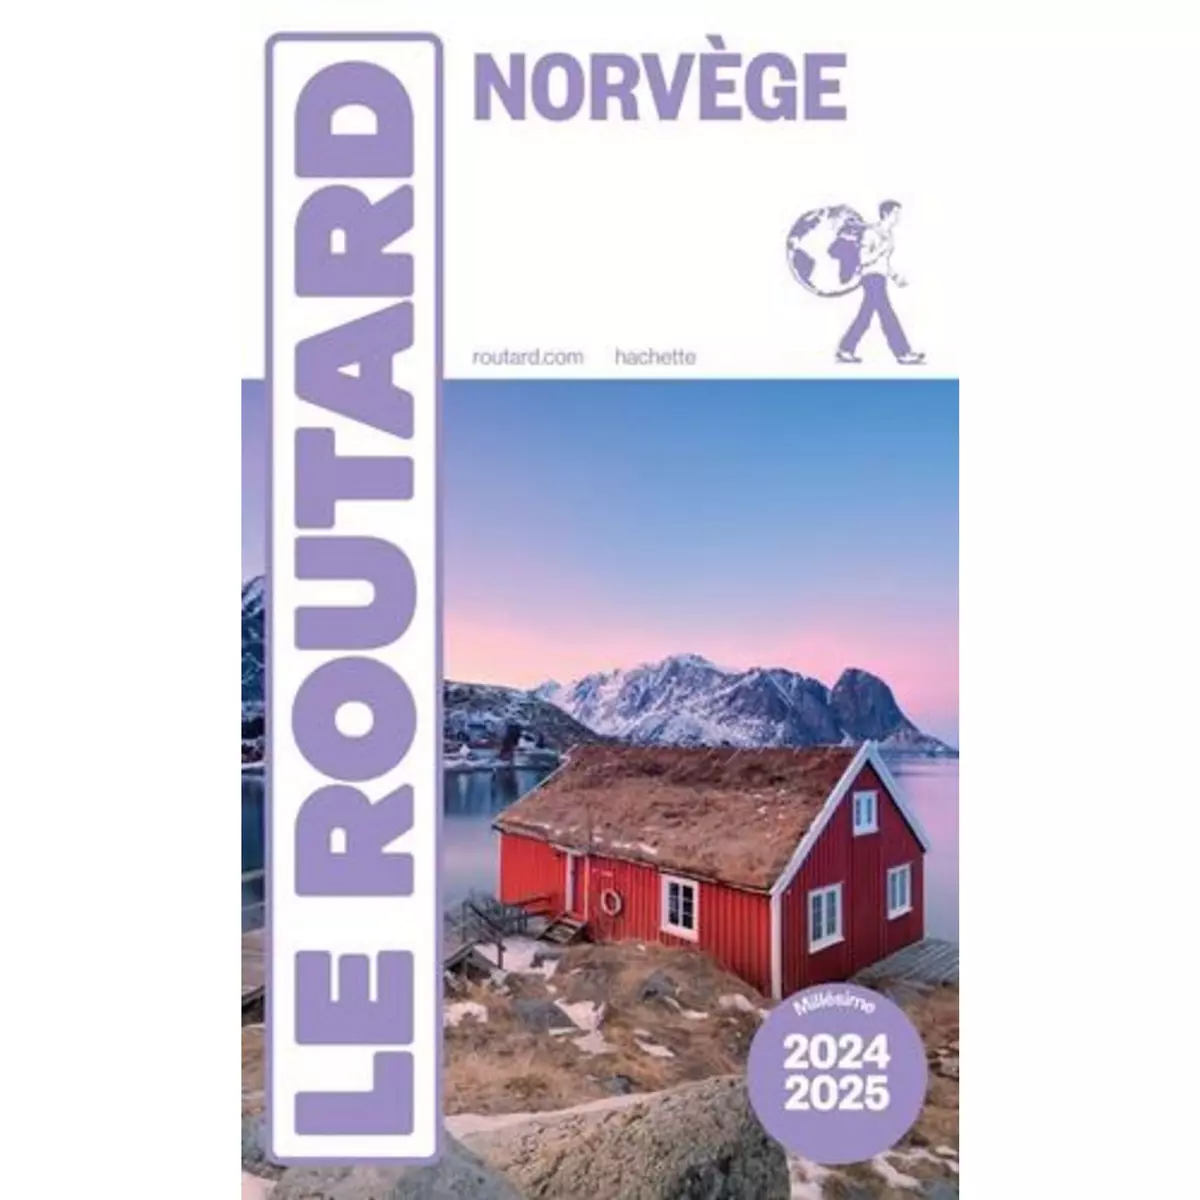  NORVEGE. EDITION 2024-2025, Le Routard